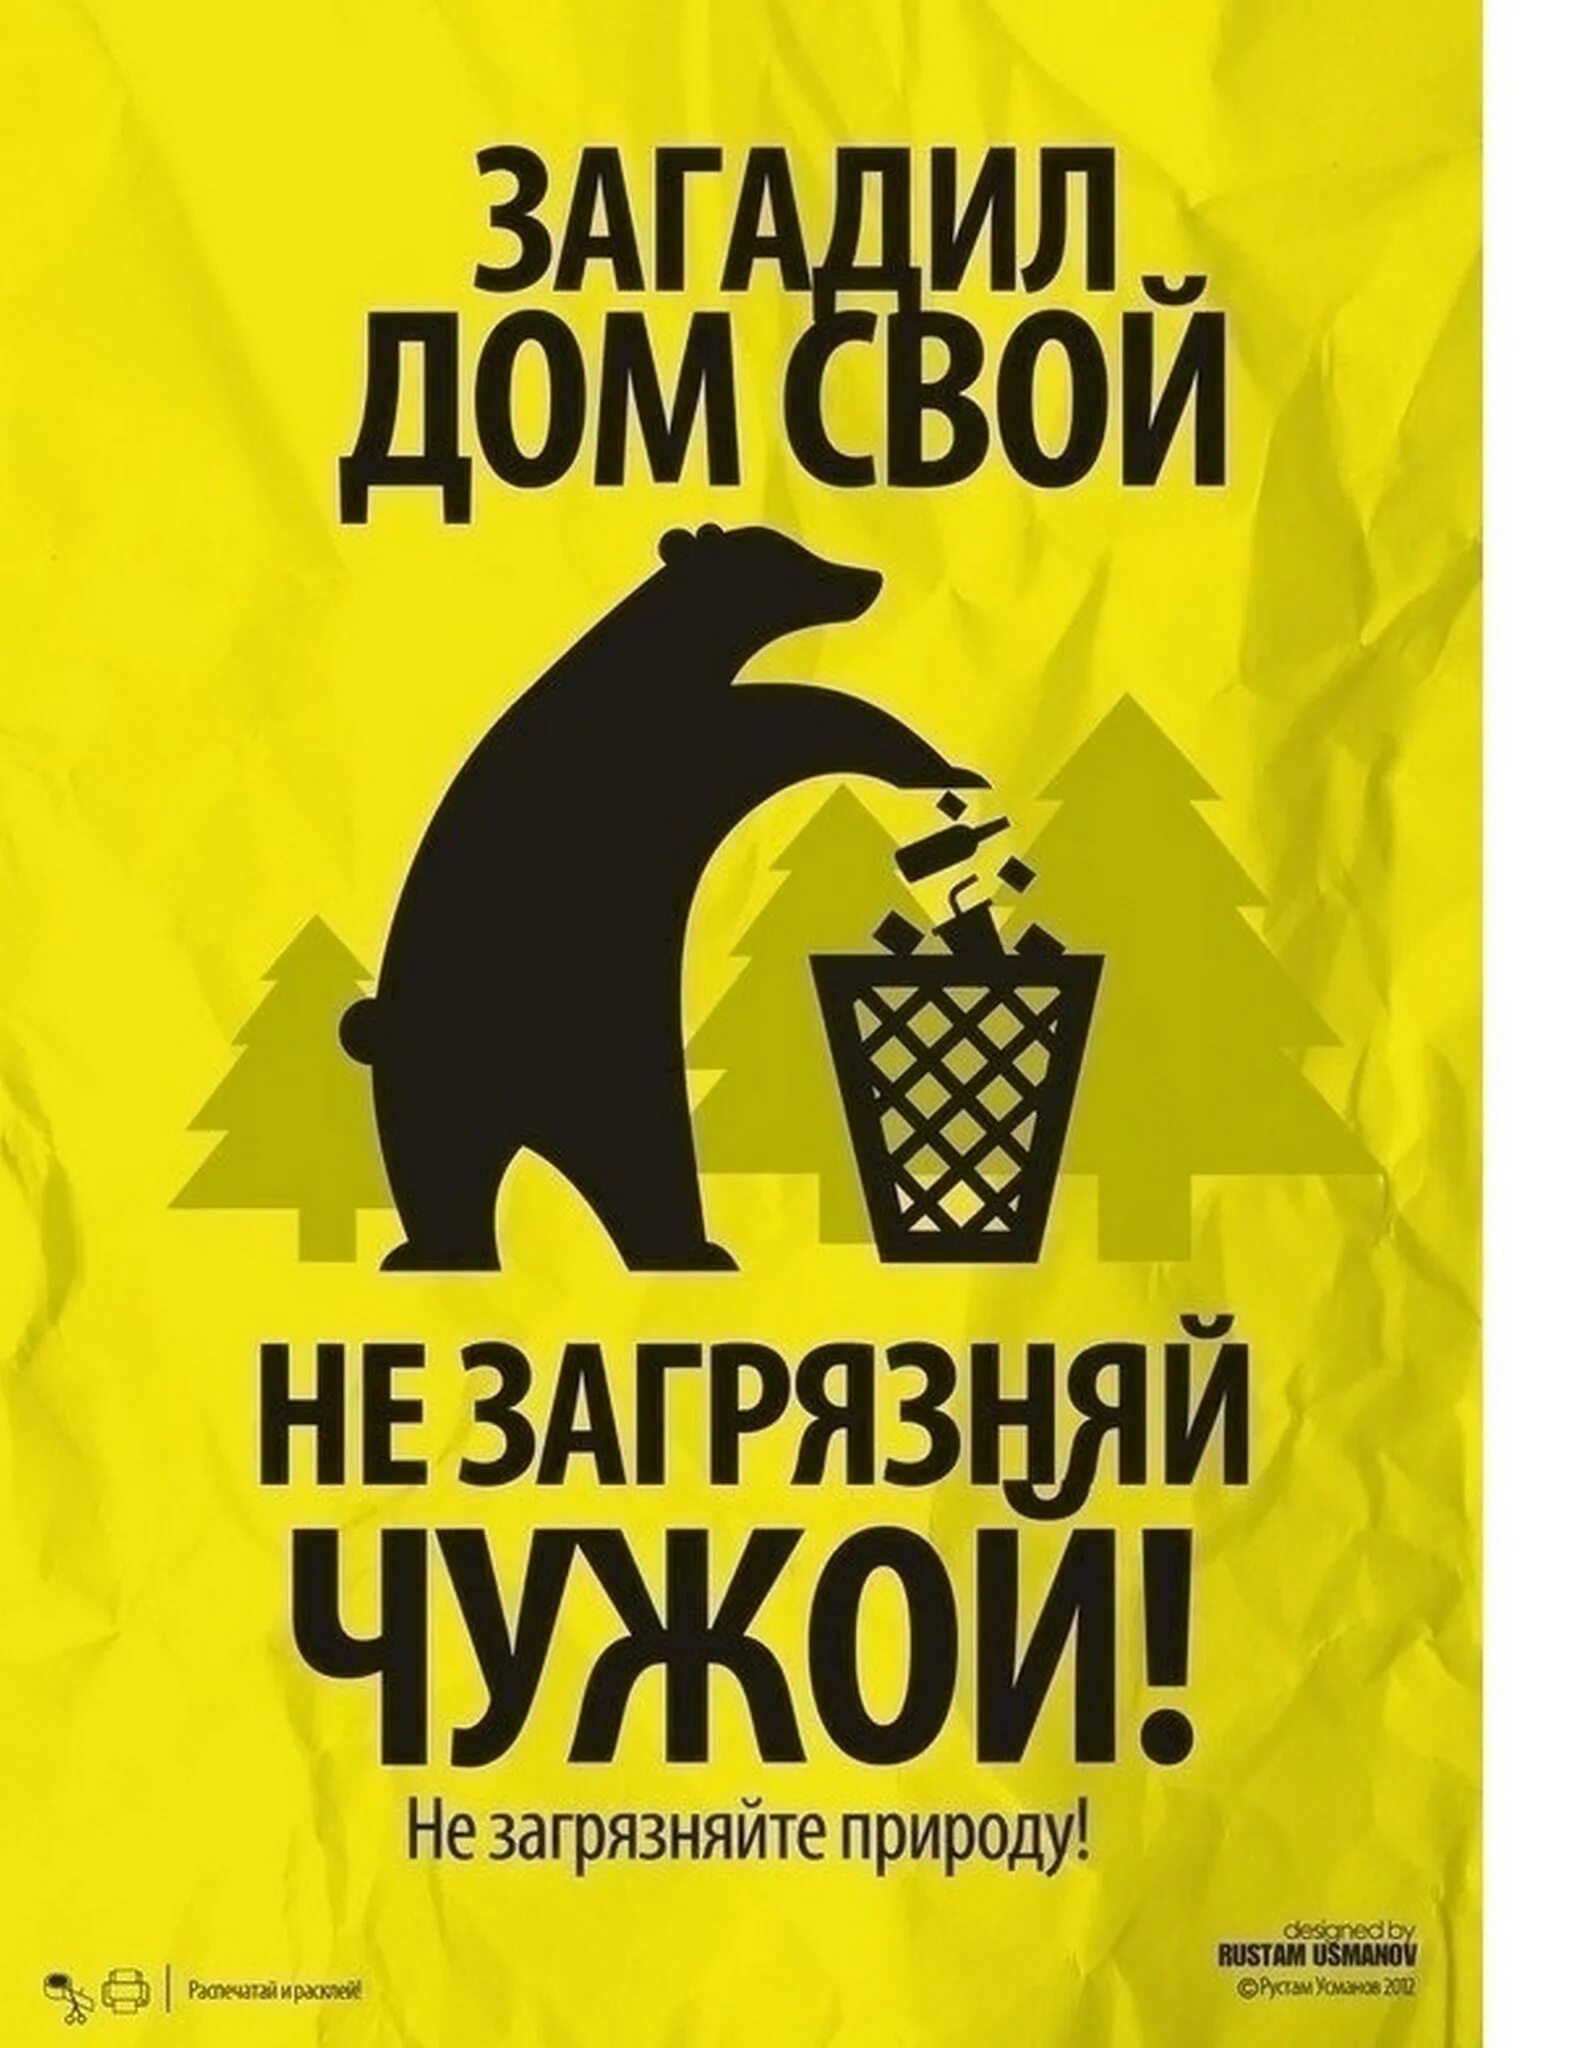 Экологический плакат. Слоган против